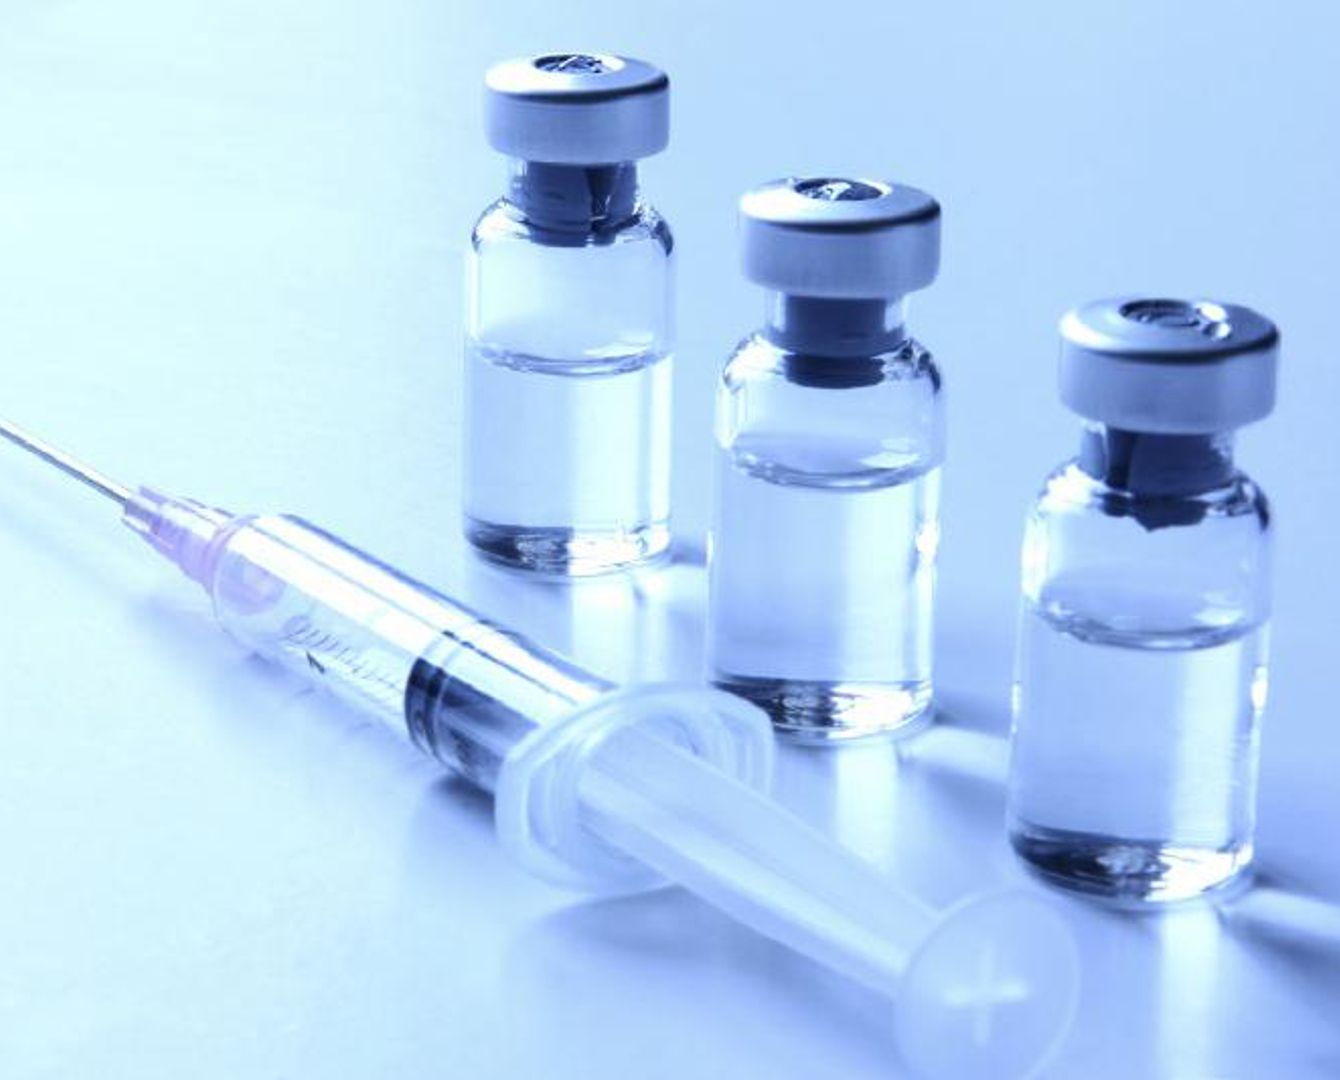 Отандық вакцинаға көп үміт артамыз – Алексей Цой